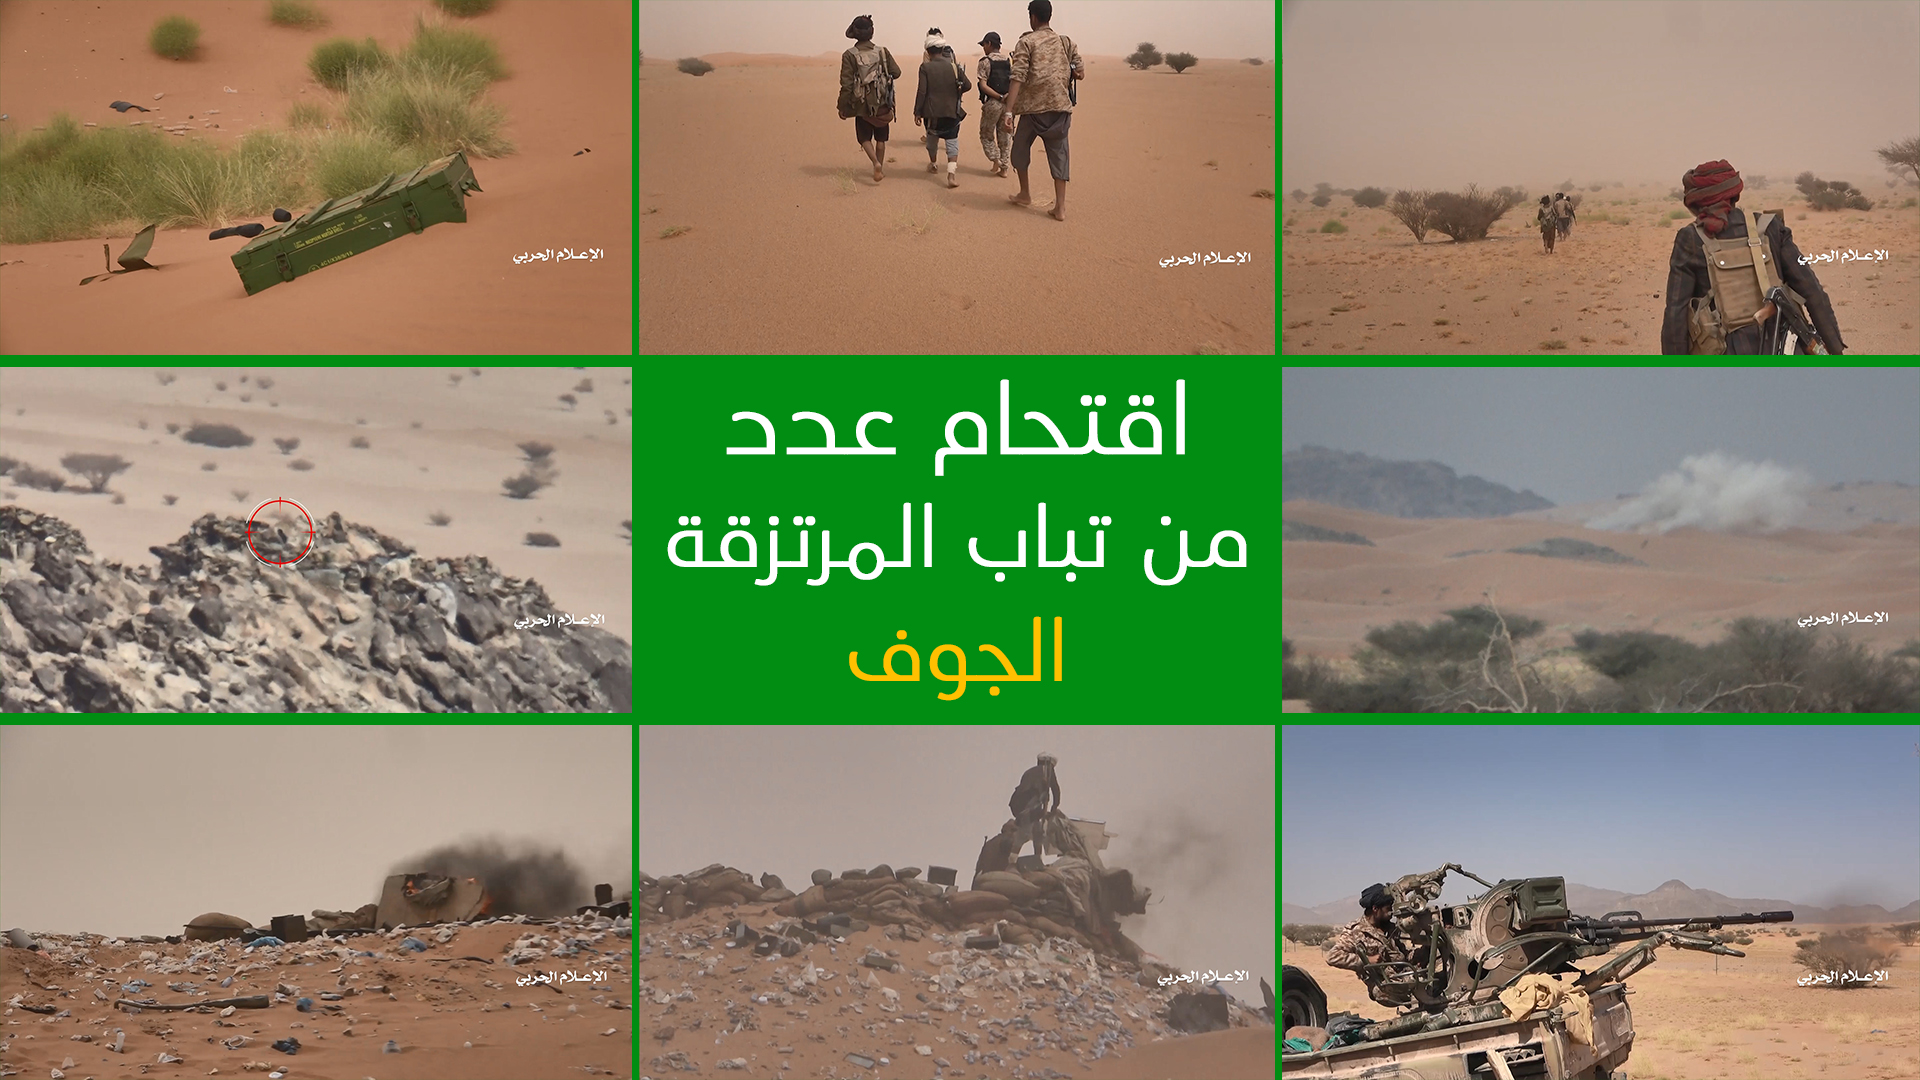 الجوف – عملية هجومية على عدد من تباب مرتزقة الجيش السعودي في صحراء الأجاشر وتكبيدهم خسائر فادحة